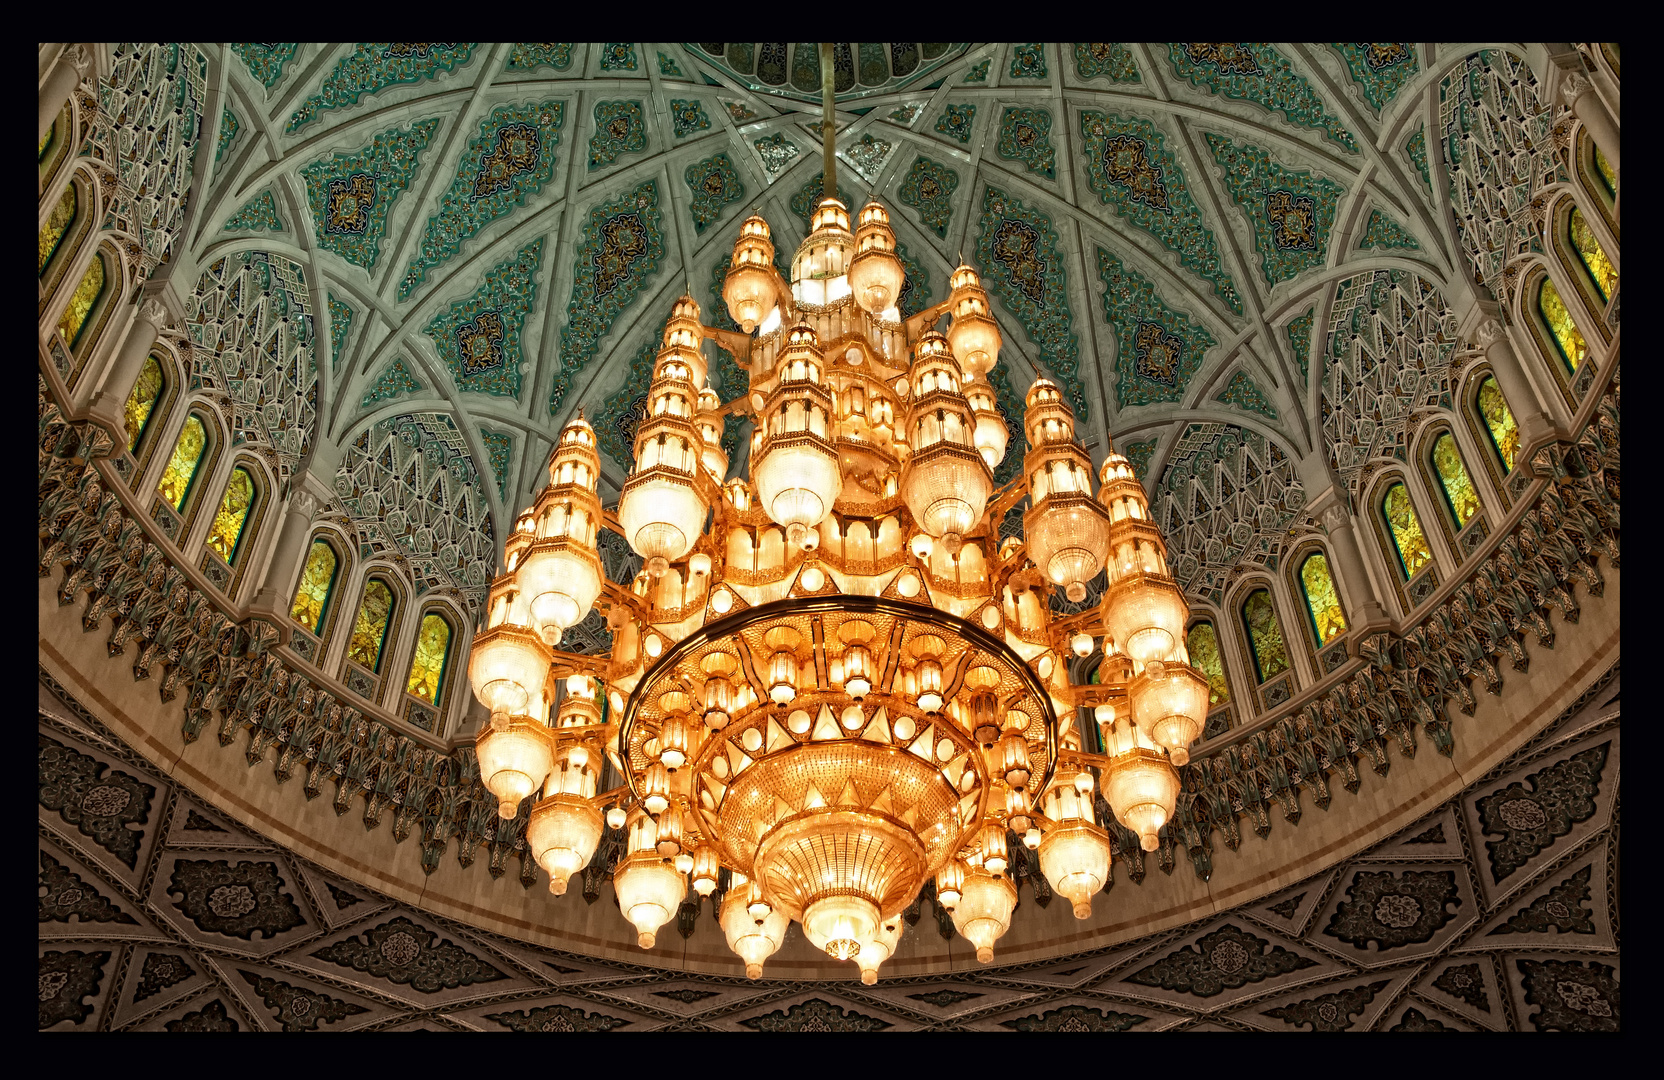 Sultan Qaboos Moschee - Kronleuchter